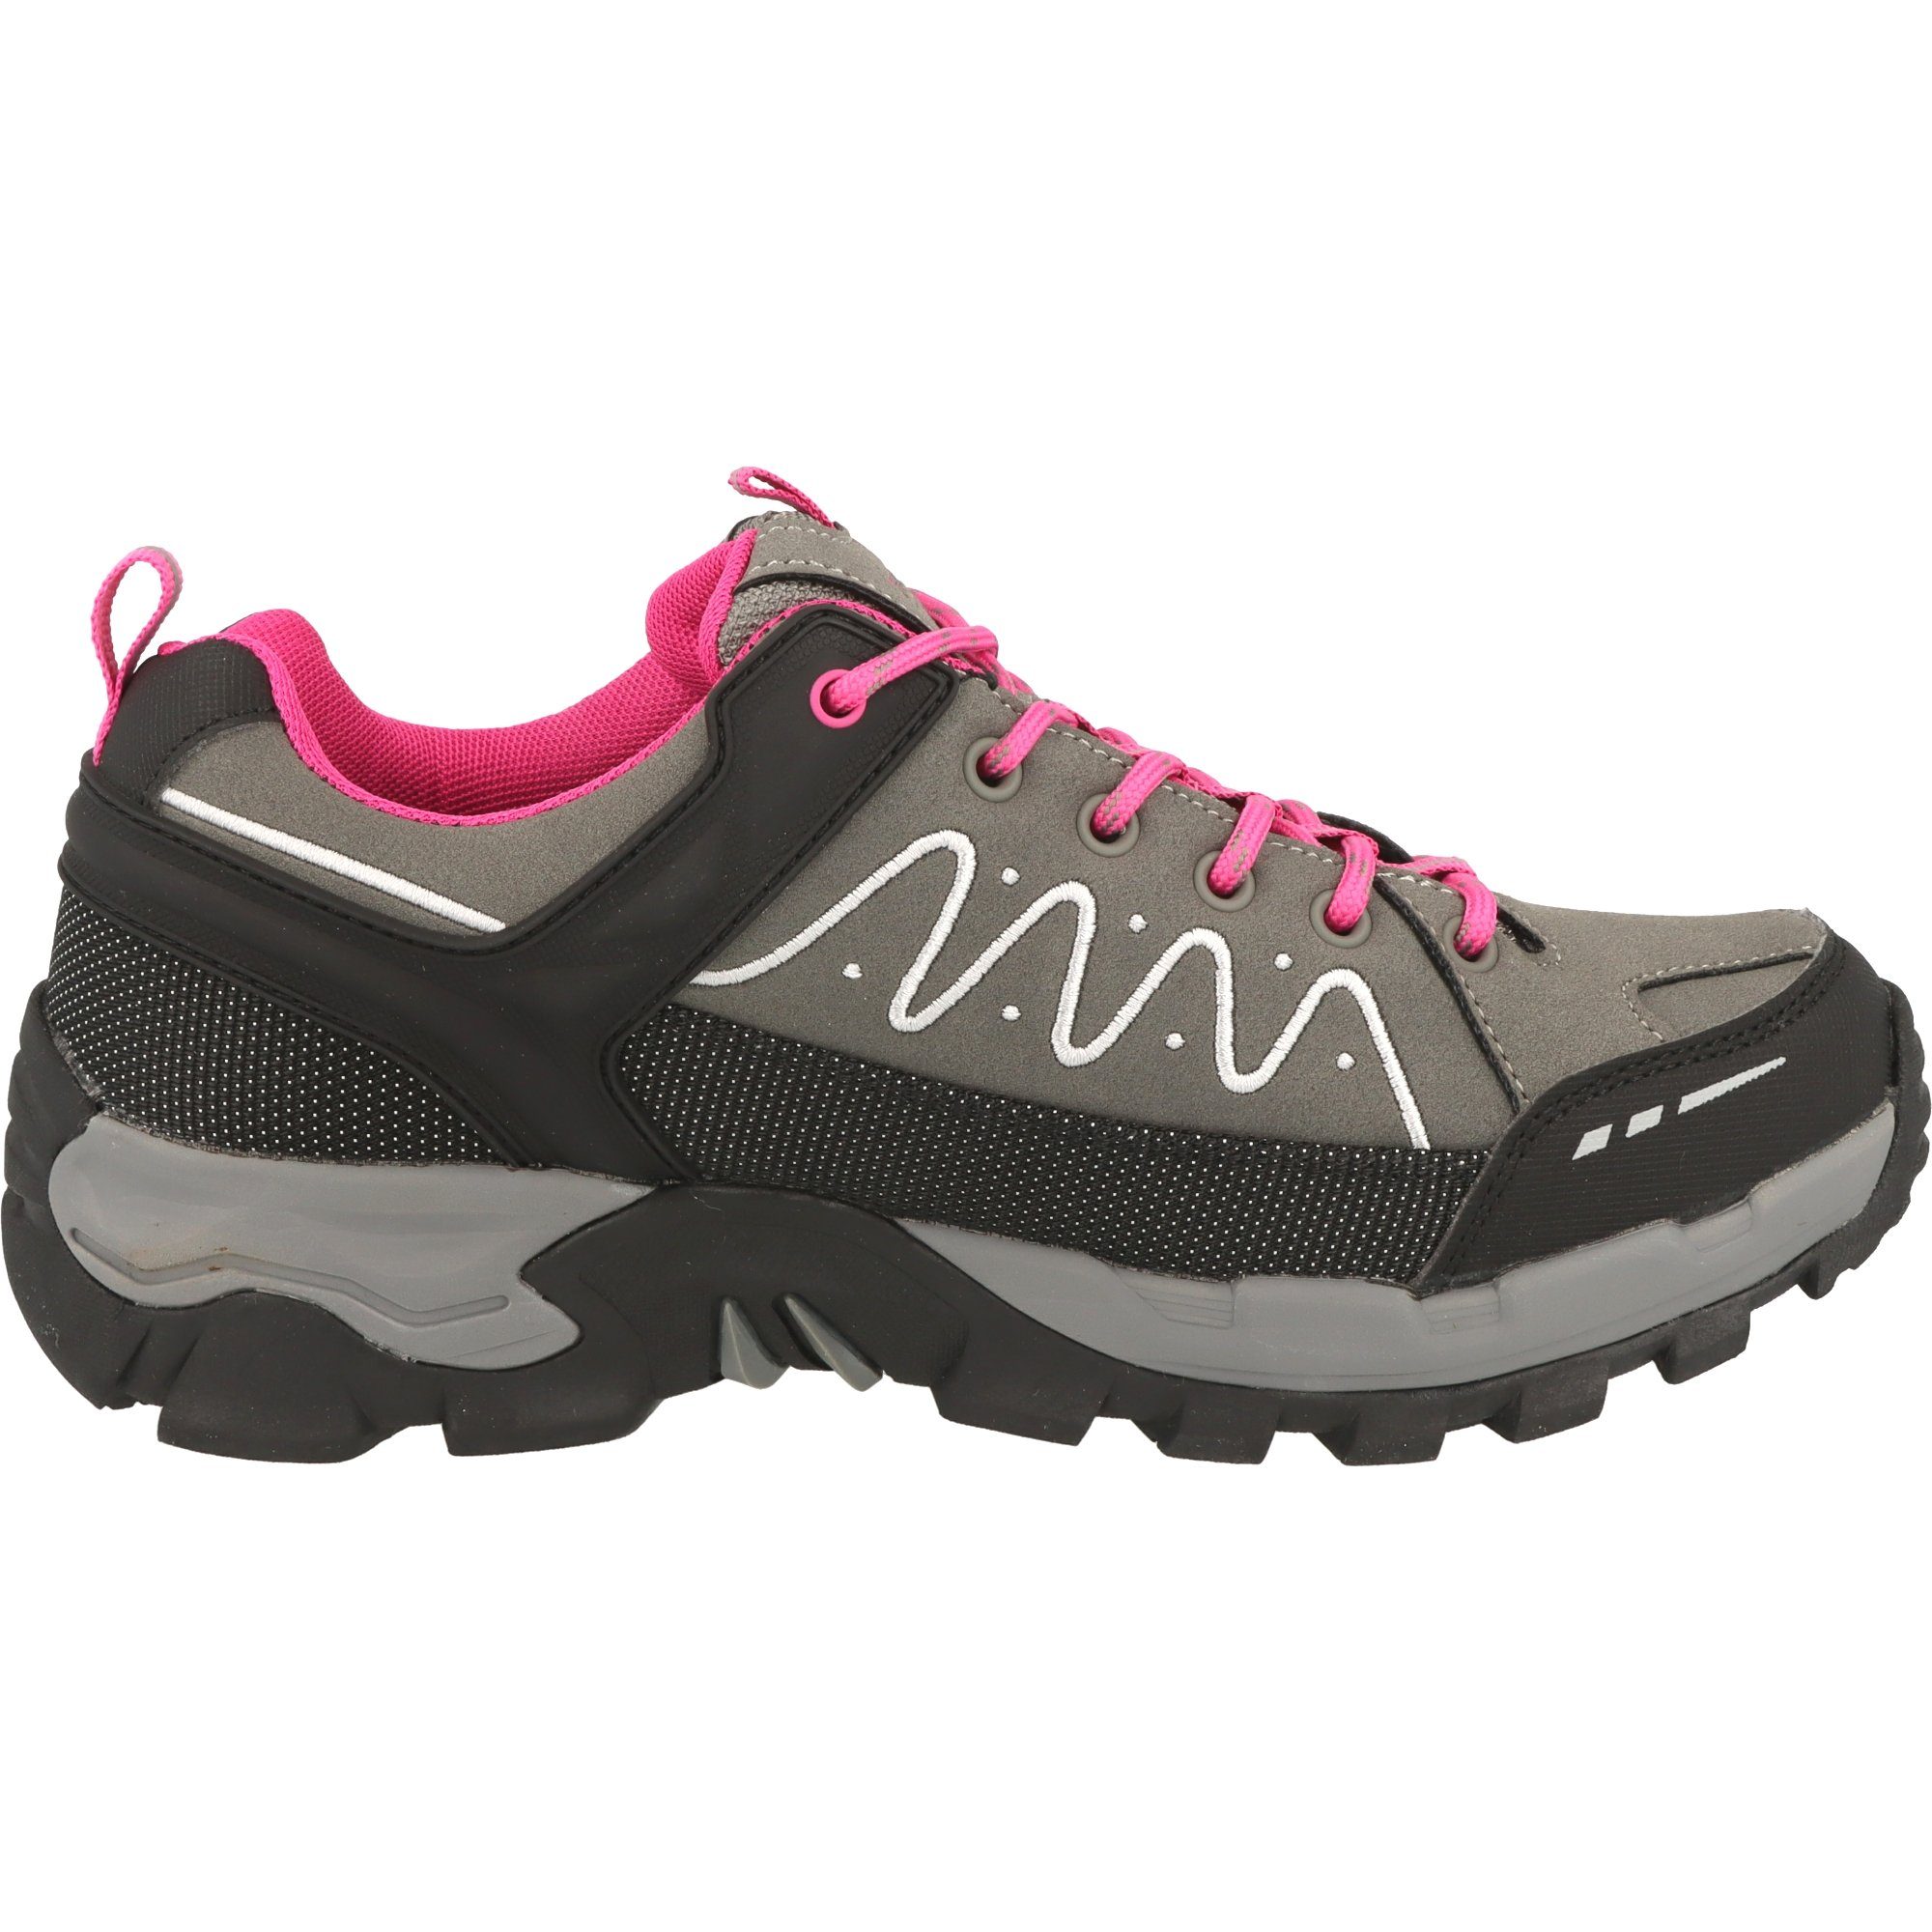 Schuhe Wasserdicht Grau/Pink by Gerli Trekking 49LC202 Trekkingschuh Dockers Damen Wander